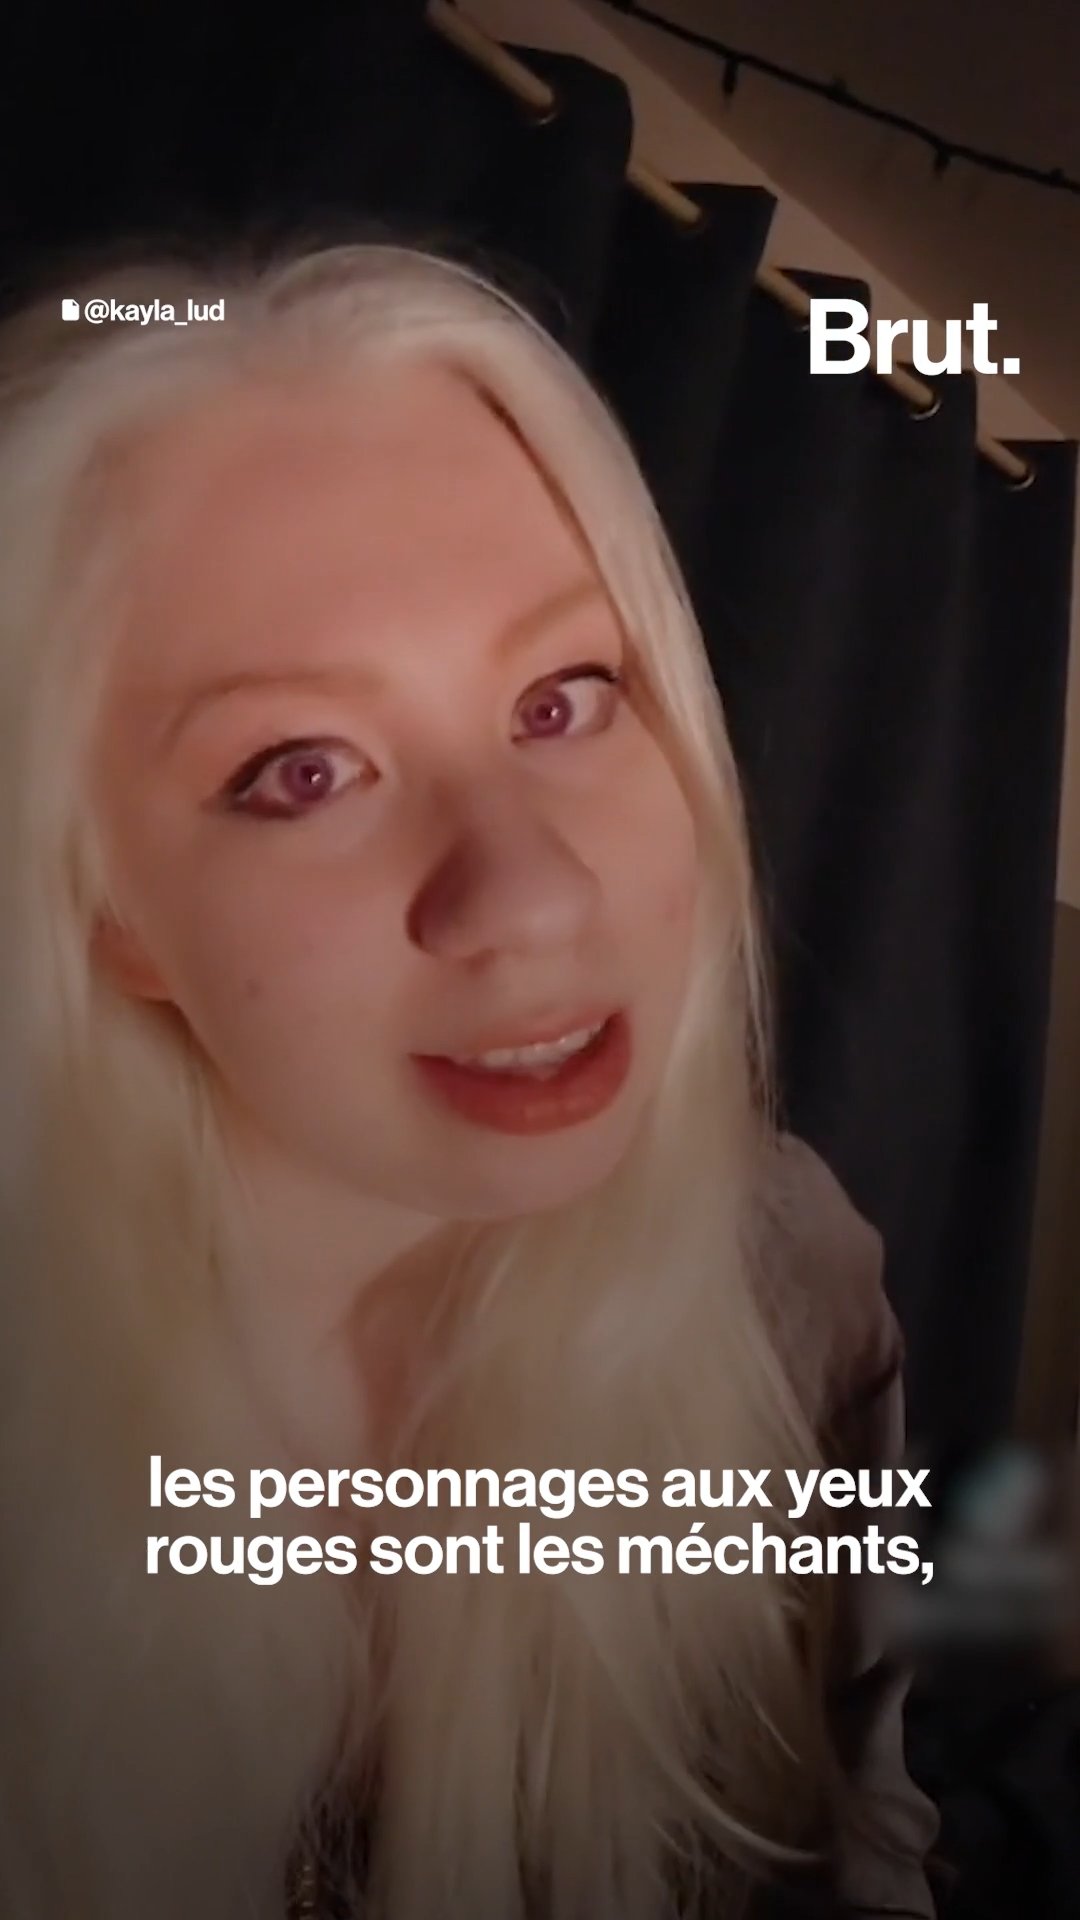 Lady Gaga Porn Xhampster - Albinos, ils parlent de leur maladie sur les rÃ©seaux sociaux - L'ABESTIT